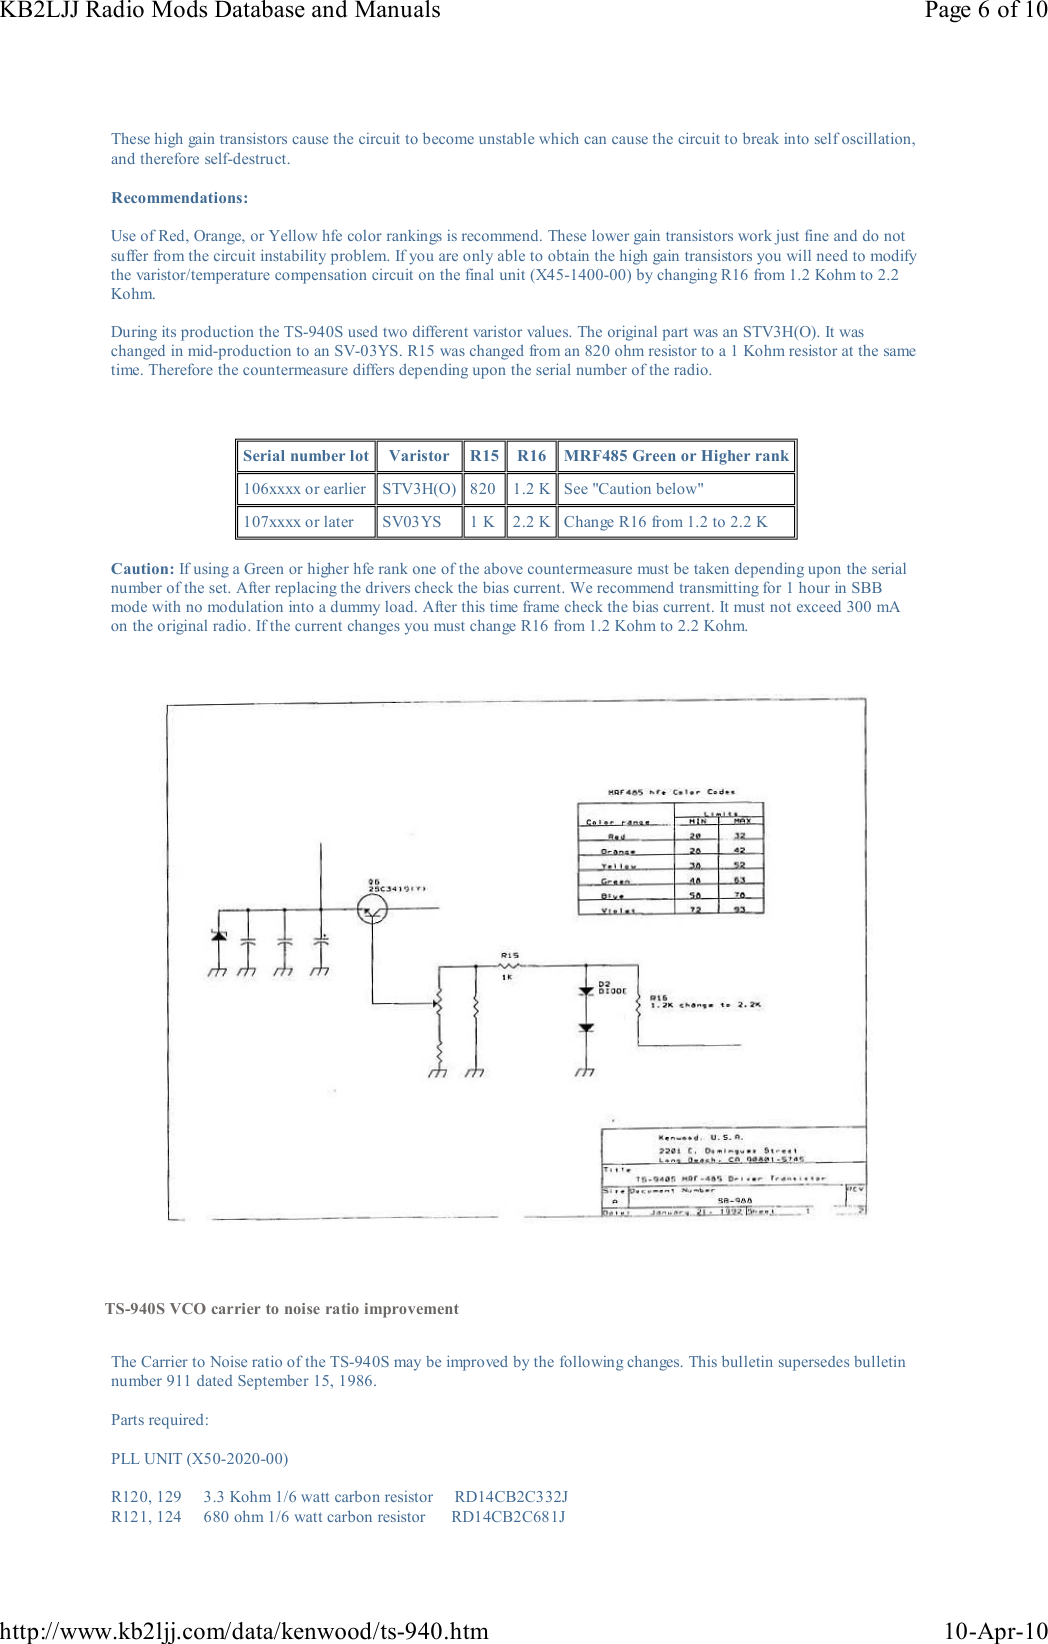 Page 6 of 10 - KENWOOD--TS-940S-MODIFS